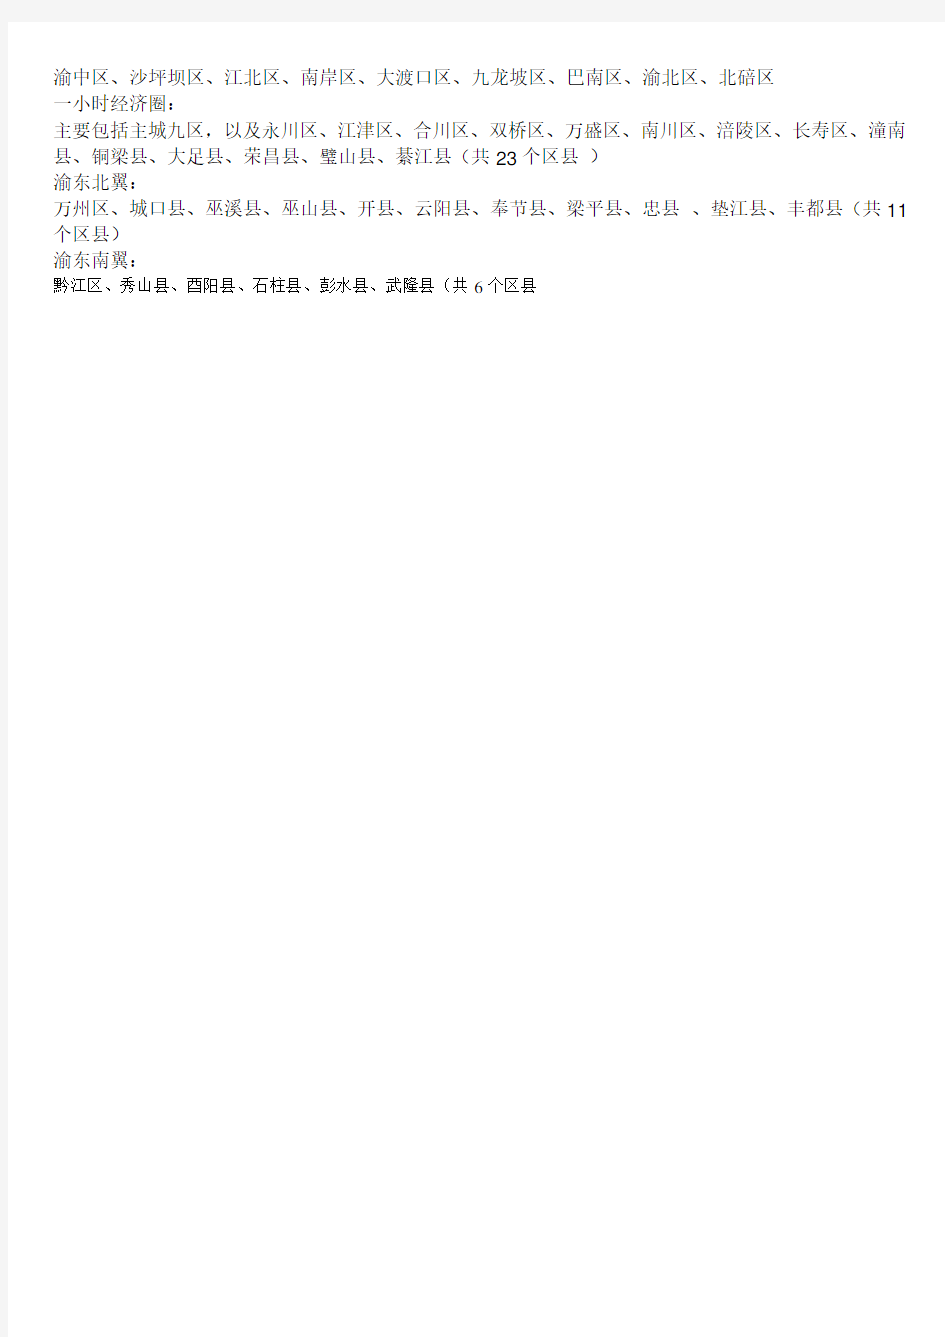 贵州省行政区划一览表